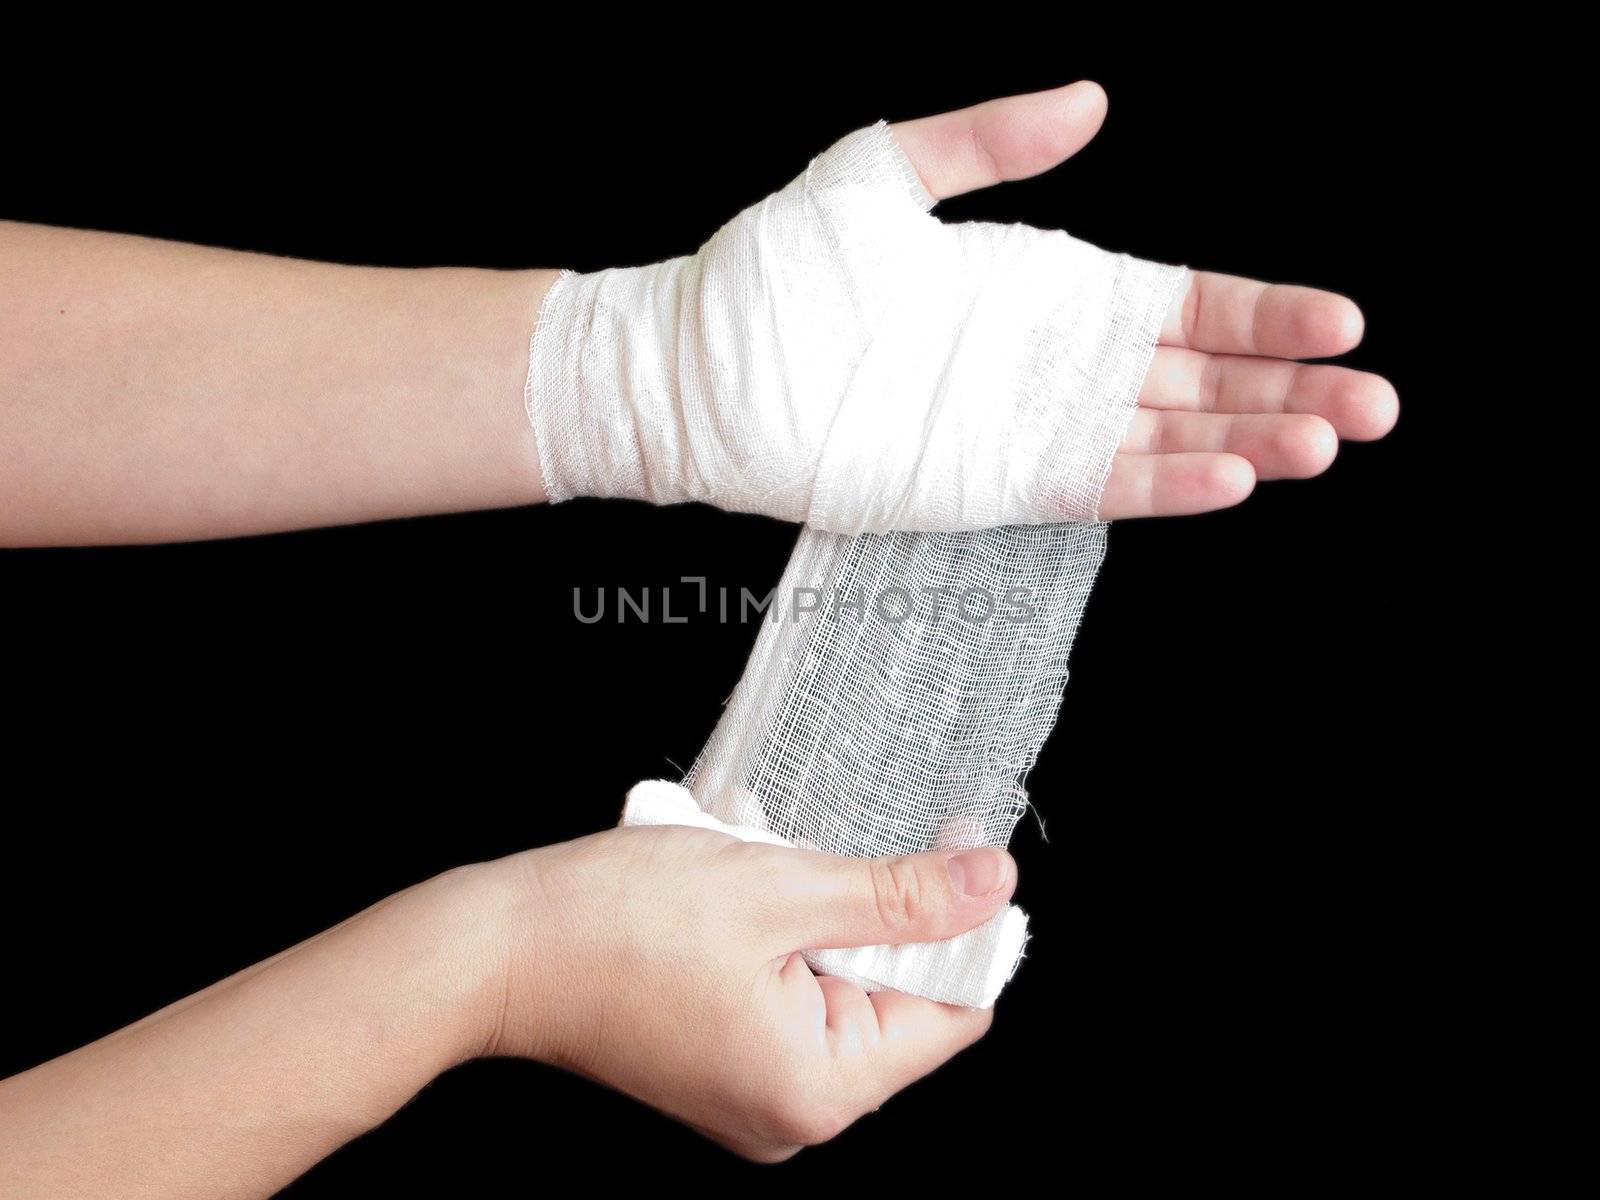 White medicine bandage on human injury hand